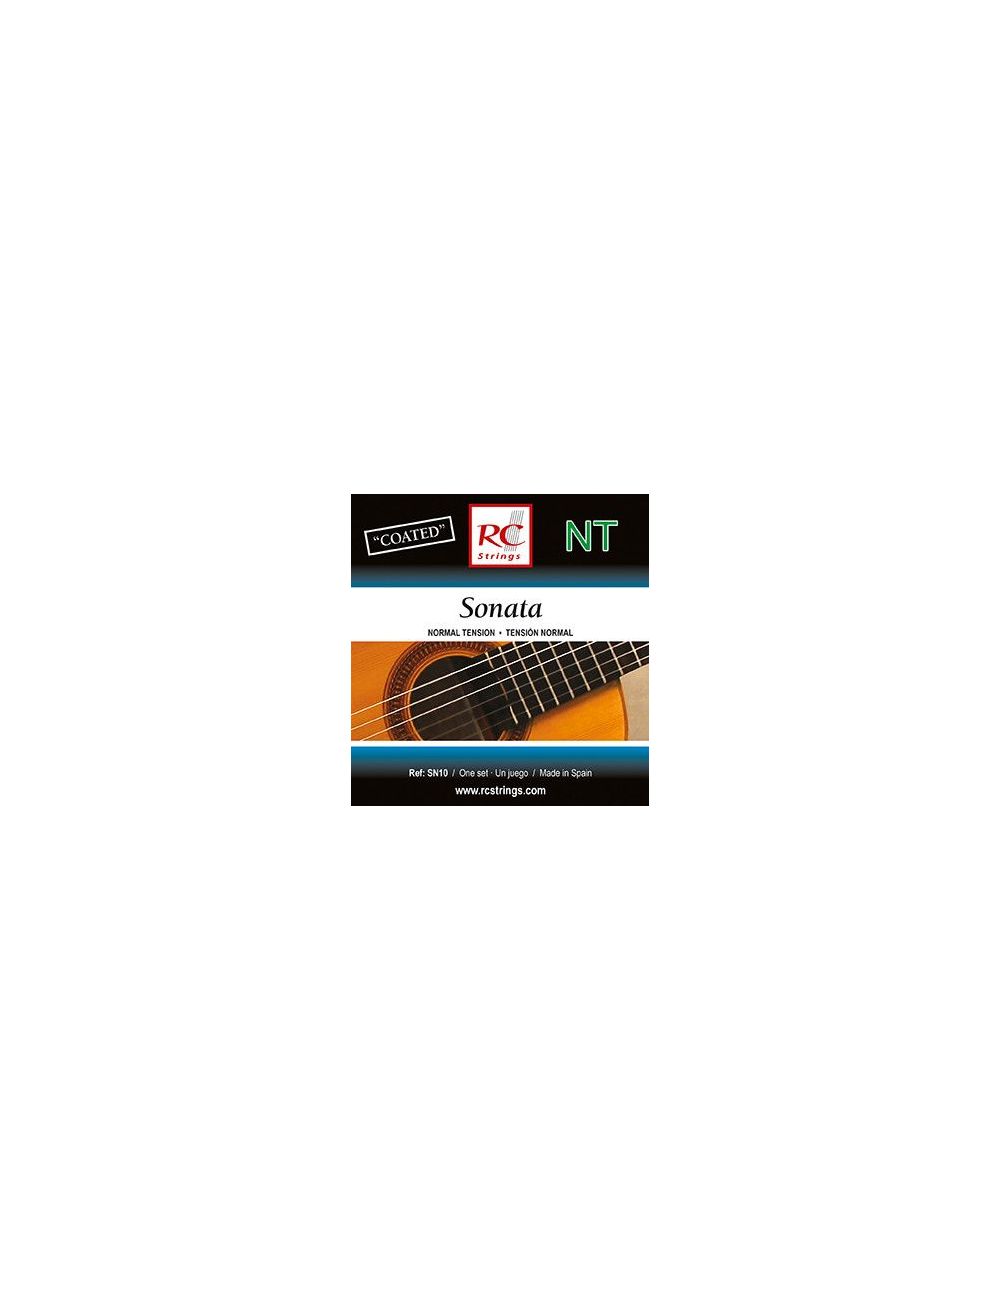 Royal Classics Sonata Classical guitar strings - Medium Tension SN10 Guitar strings